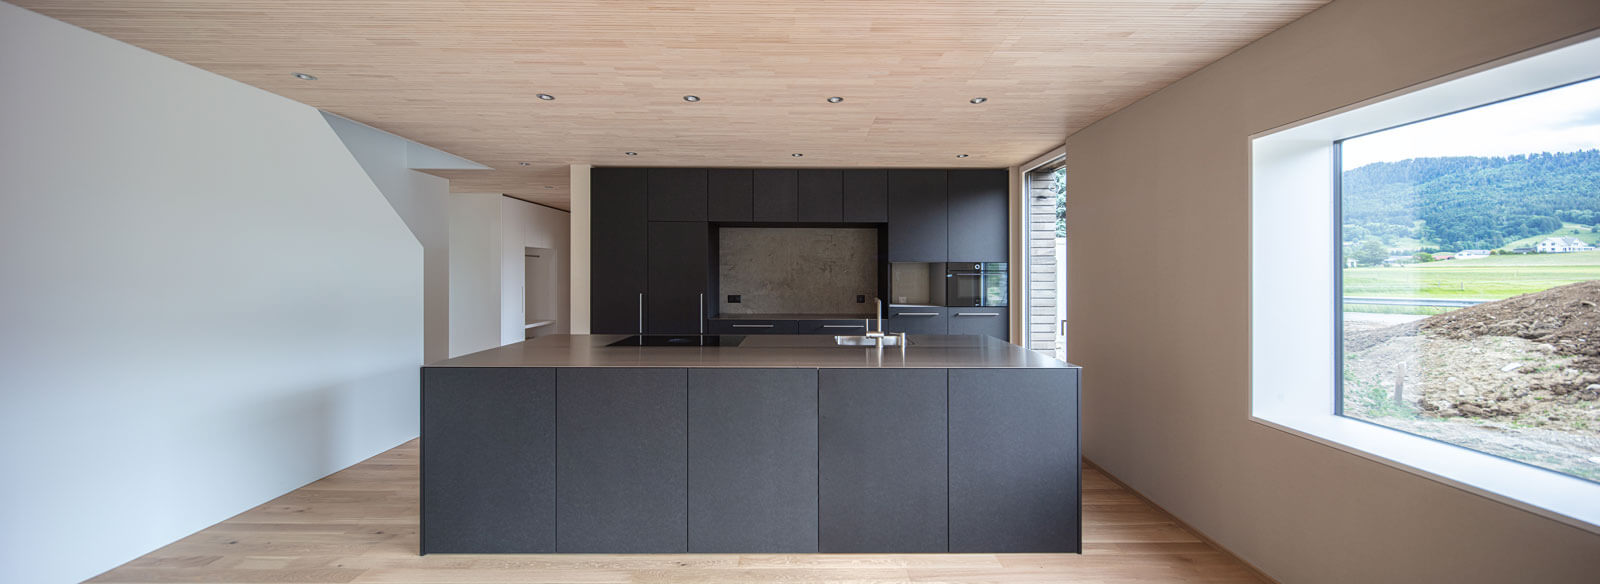 Blick auf die zweifronten Küche aus schwarzem MDF mit Chromstahlabdeckung. Die schwarze Küche ist im Kontrast du den weissen Wänden. Decke und Boden in hellem Holz.